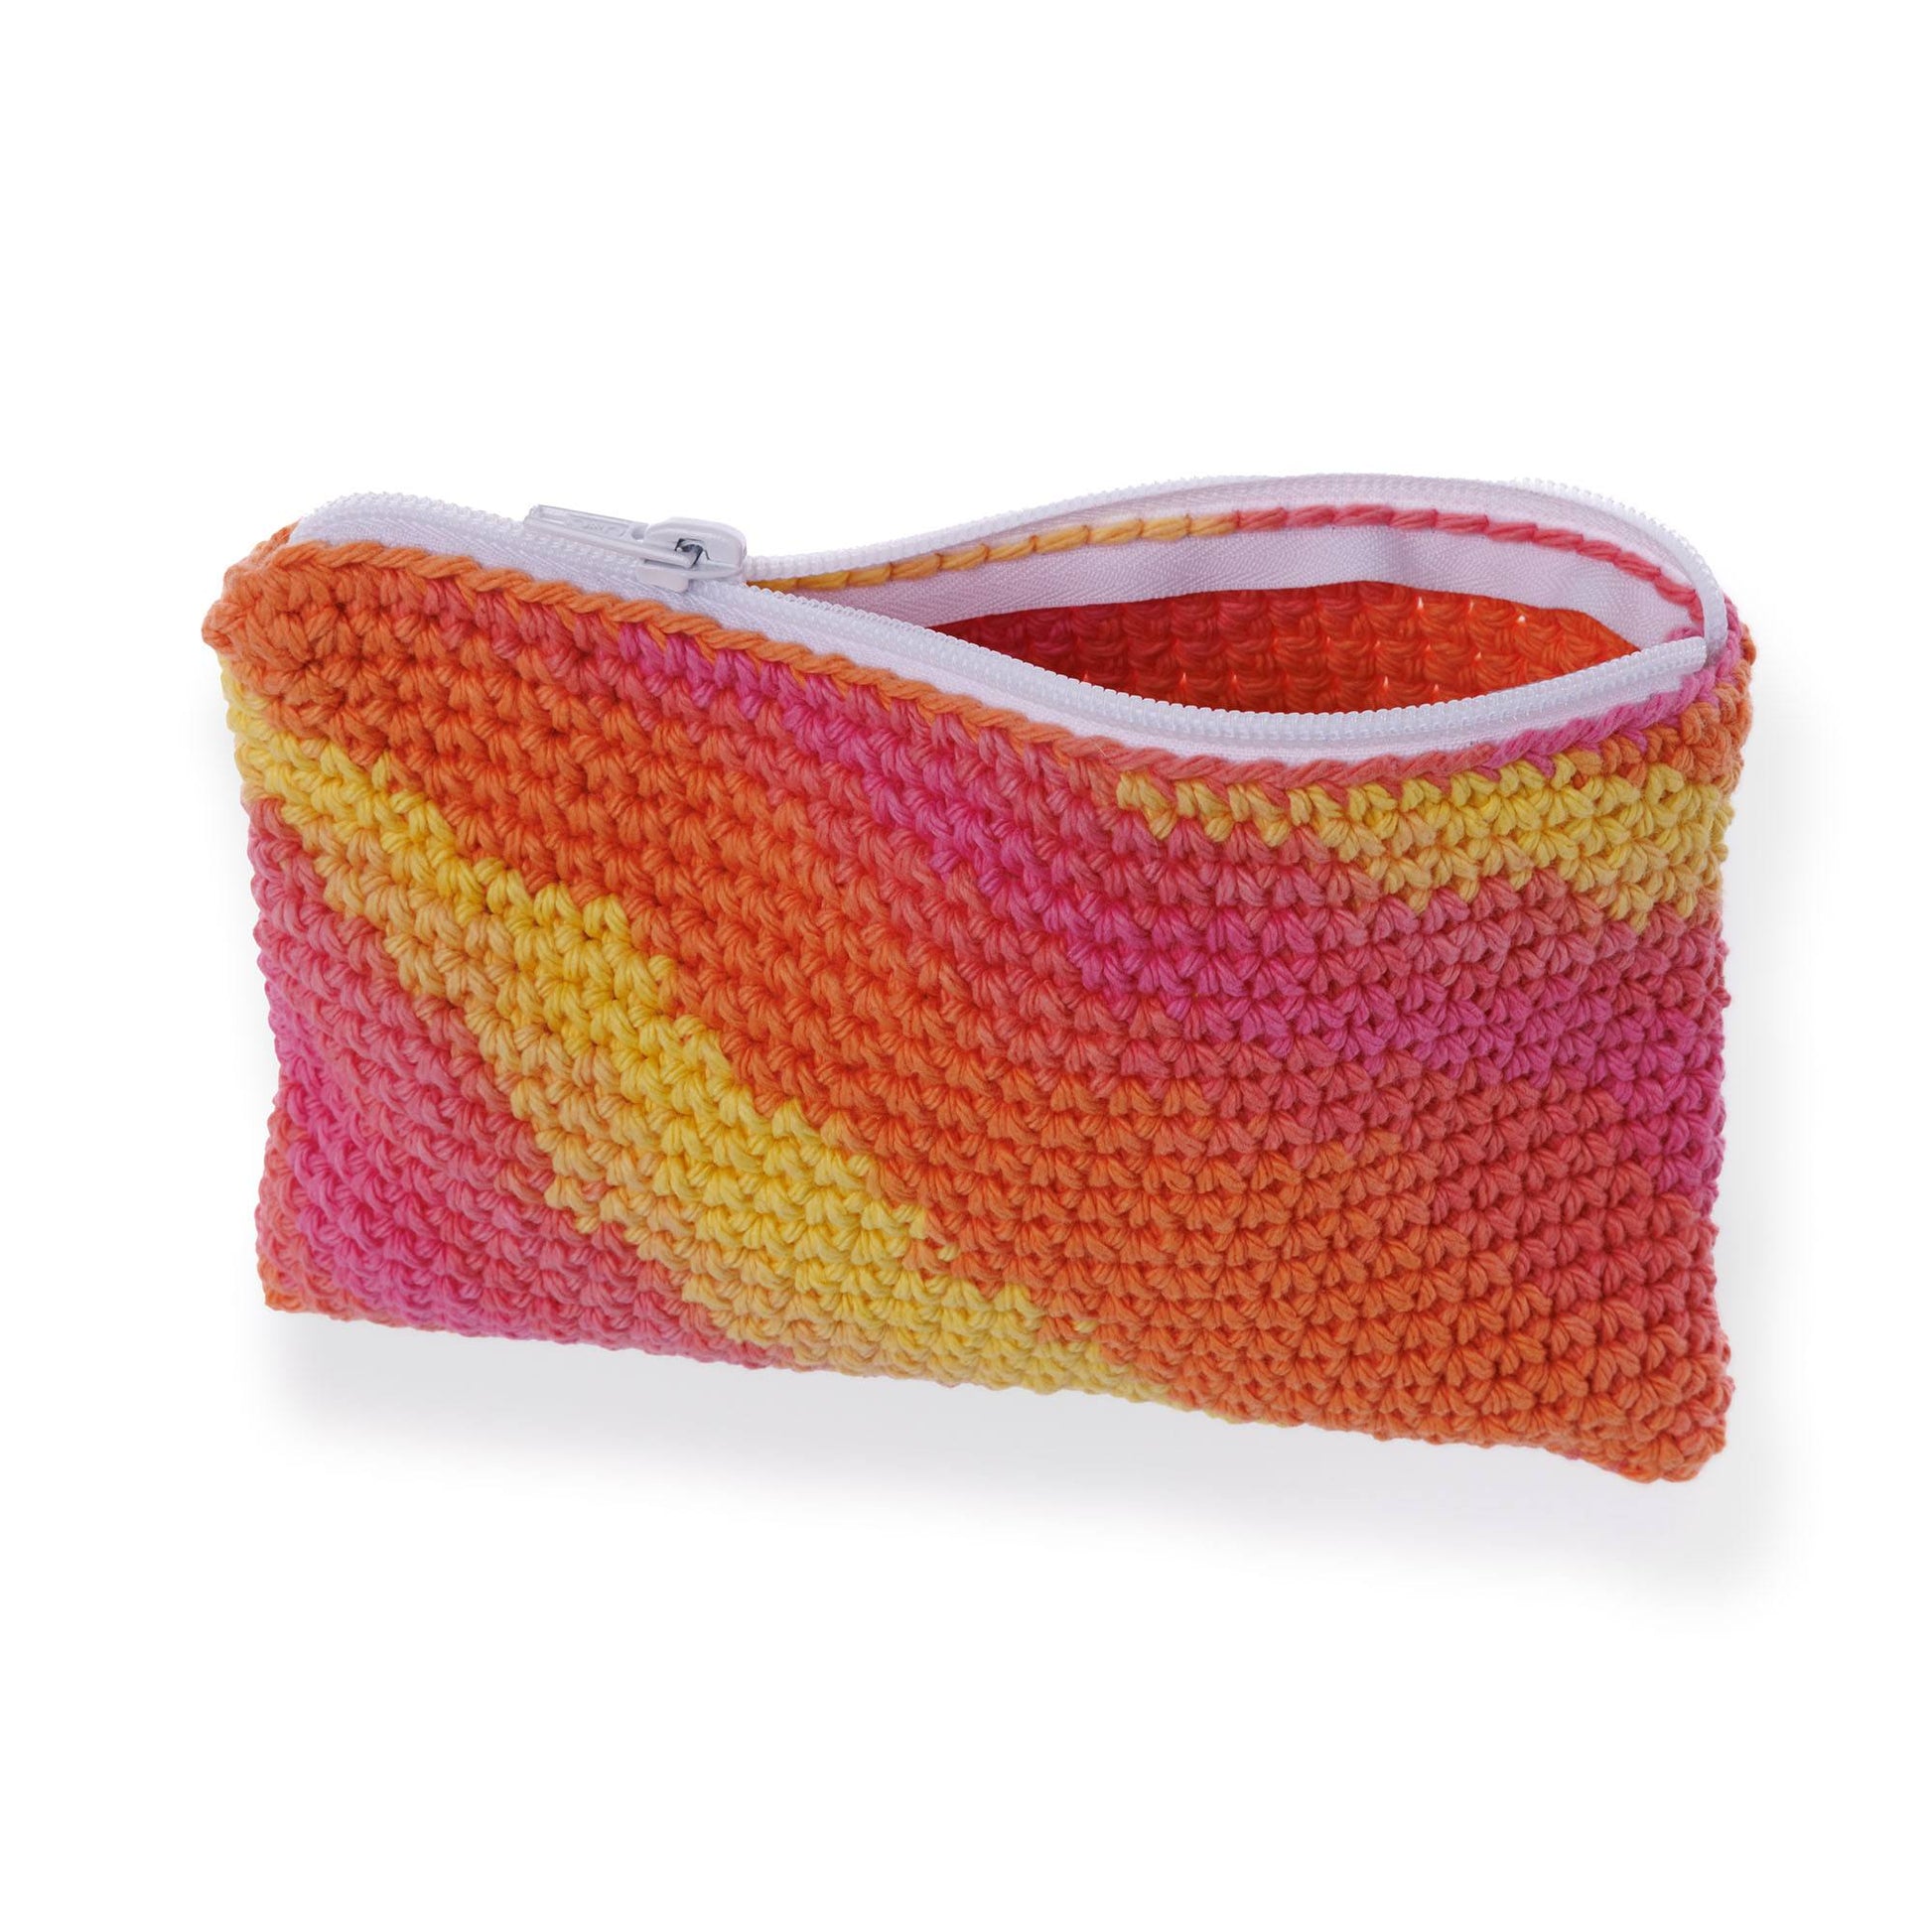 Free Lily Crochet Yarn Zip Pouch Pattern